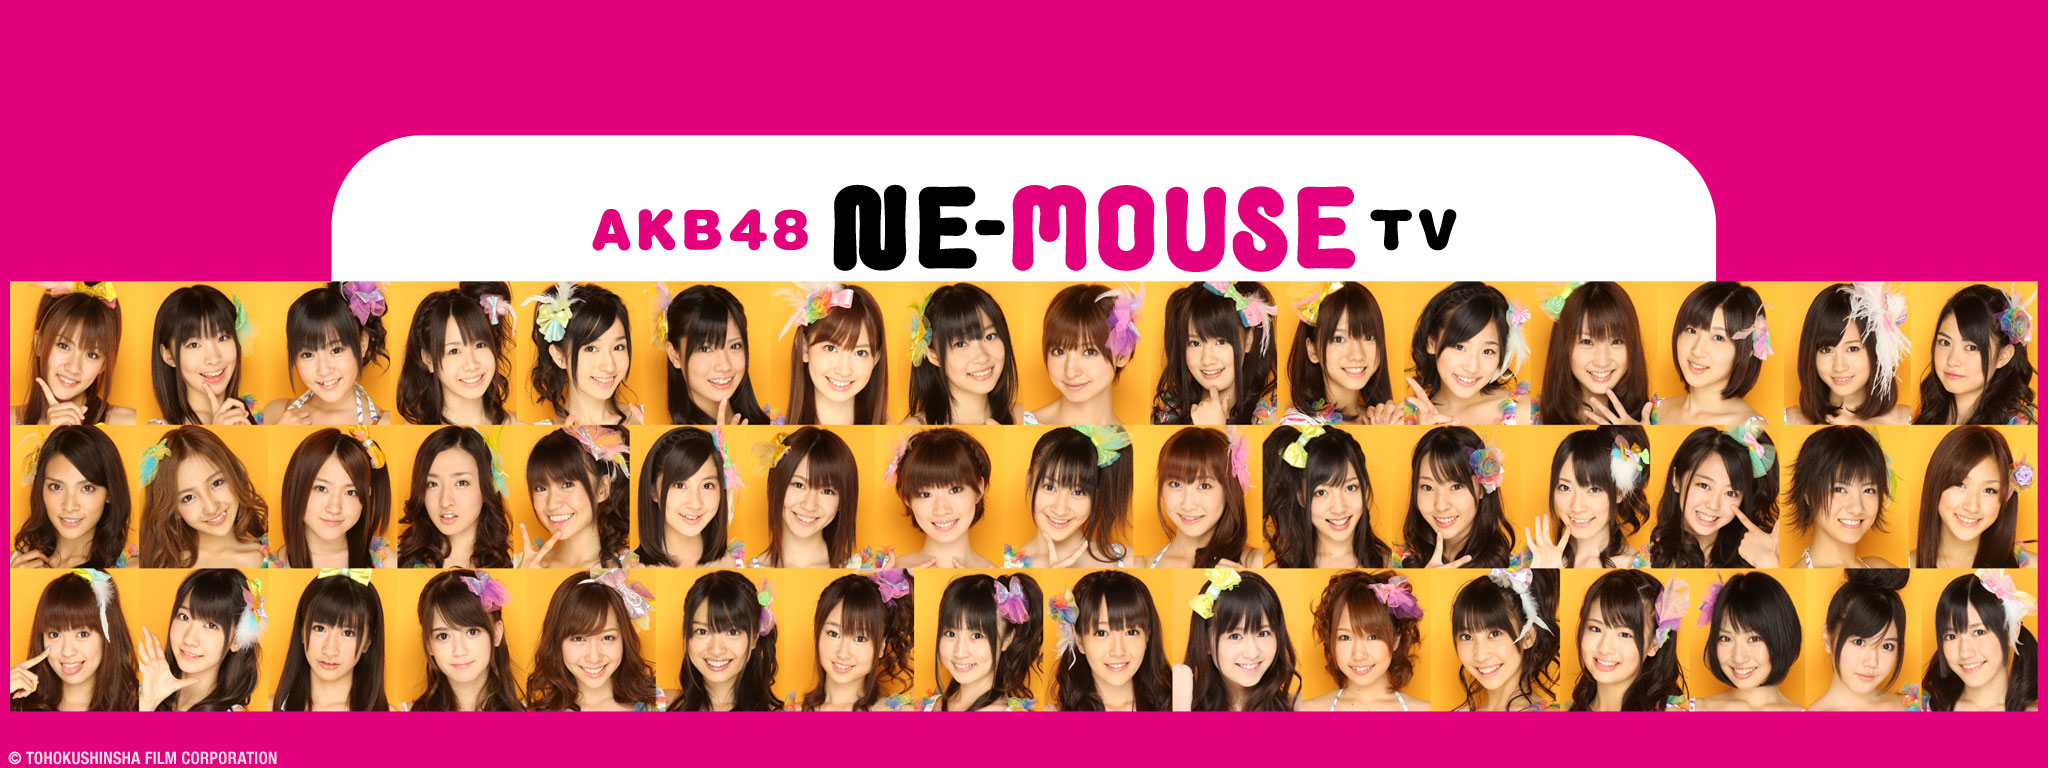 Title Art for AKB48 Ne-Mouse TV